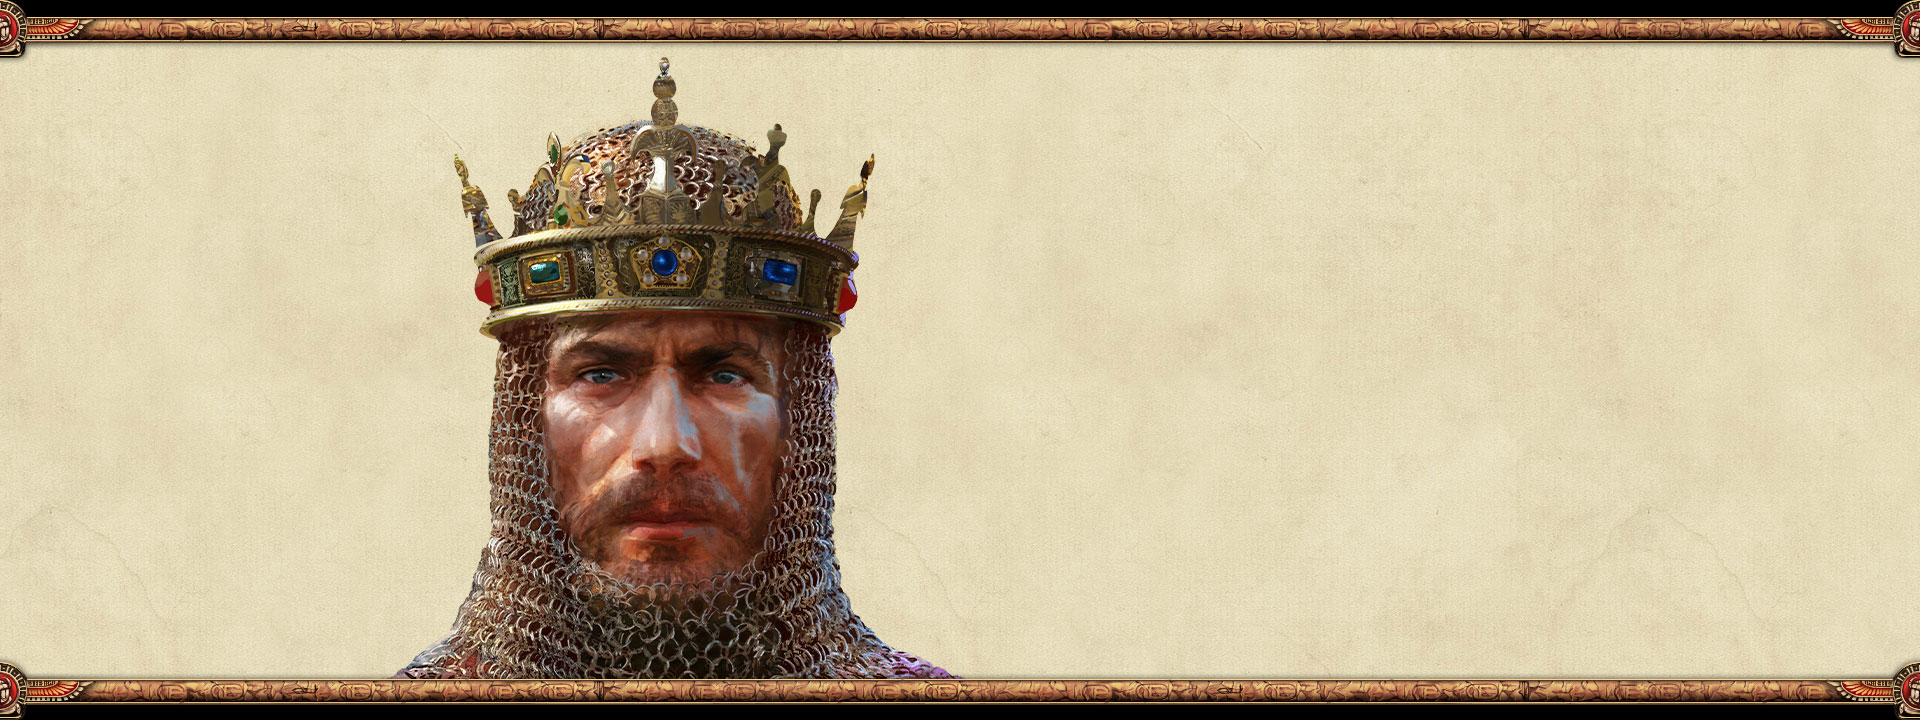 El gobernante de un imperio lleva una cadena y una corona